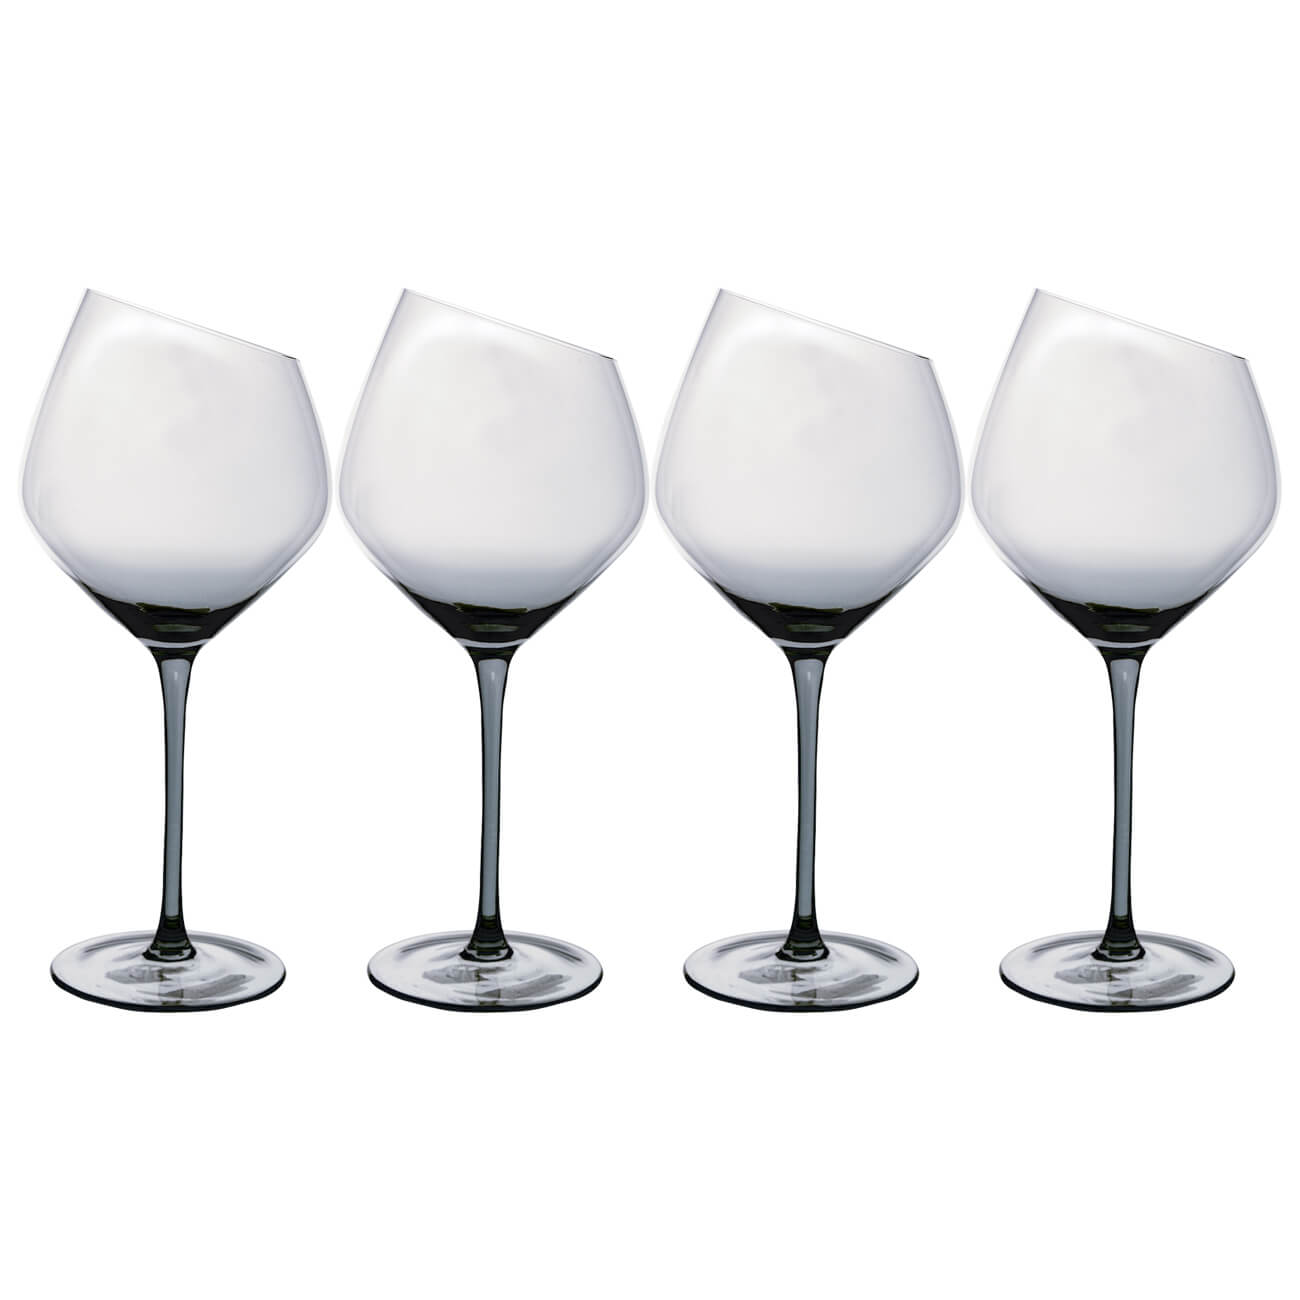 Бокал для красного вина, 560 мл, 4 шт, стекло, серый, Charm L Color бокал для красного вина 560 мл 4 шт charm l